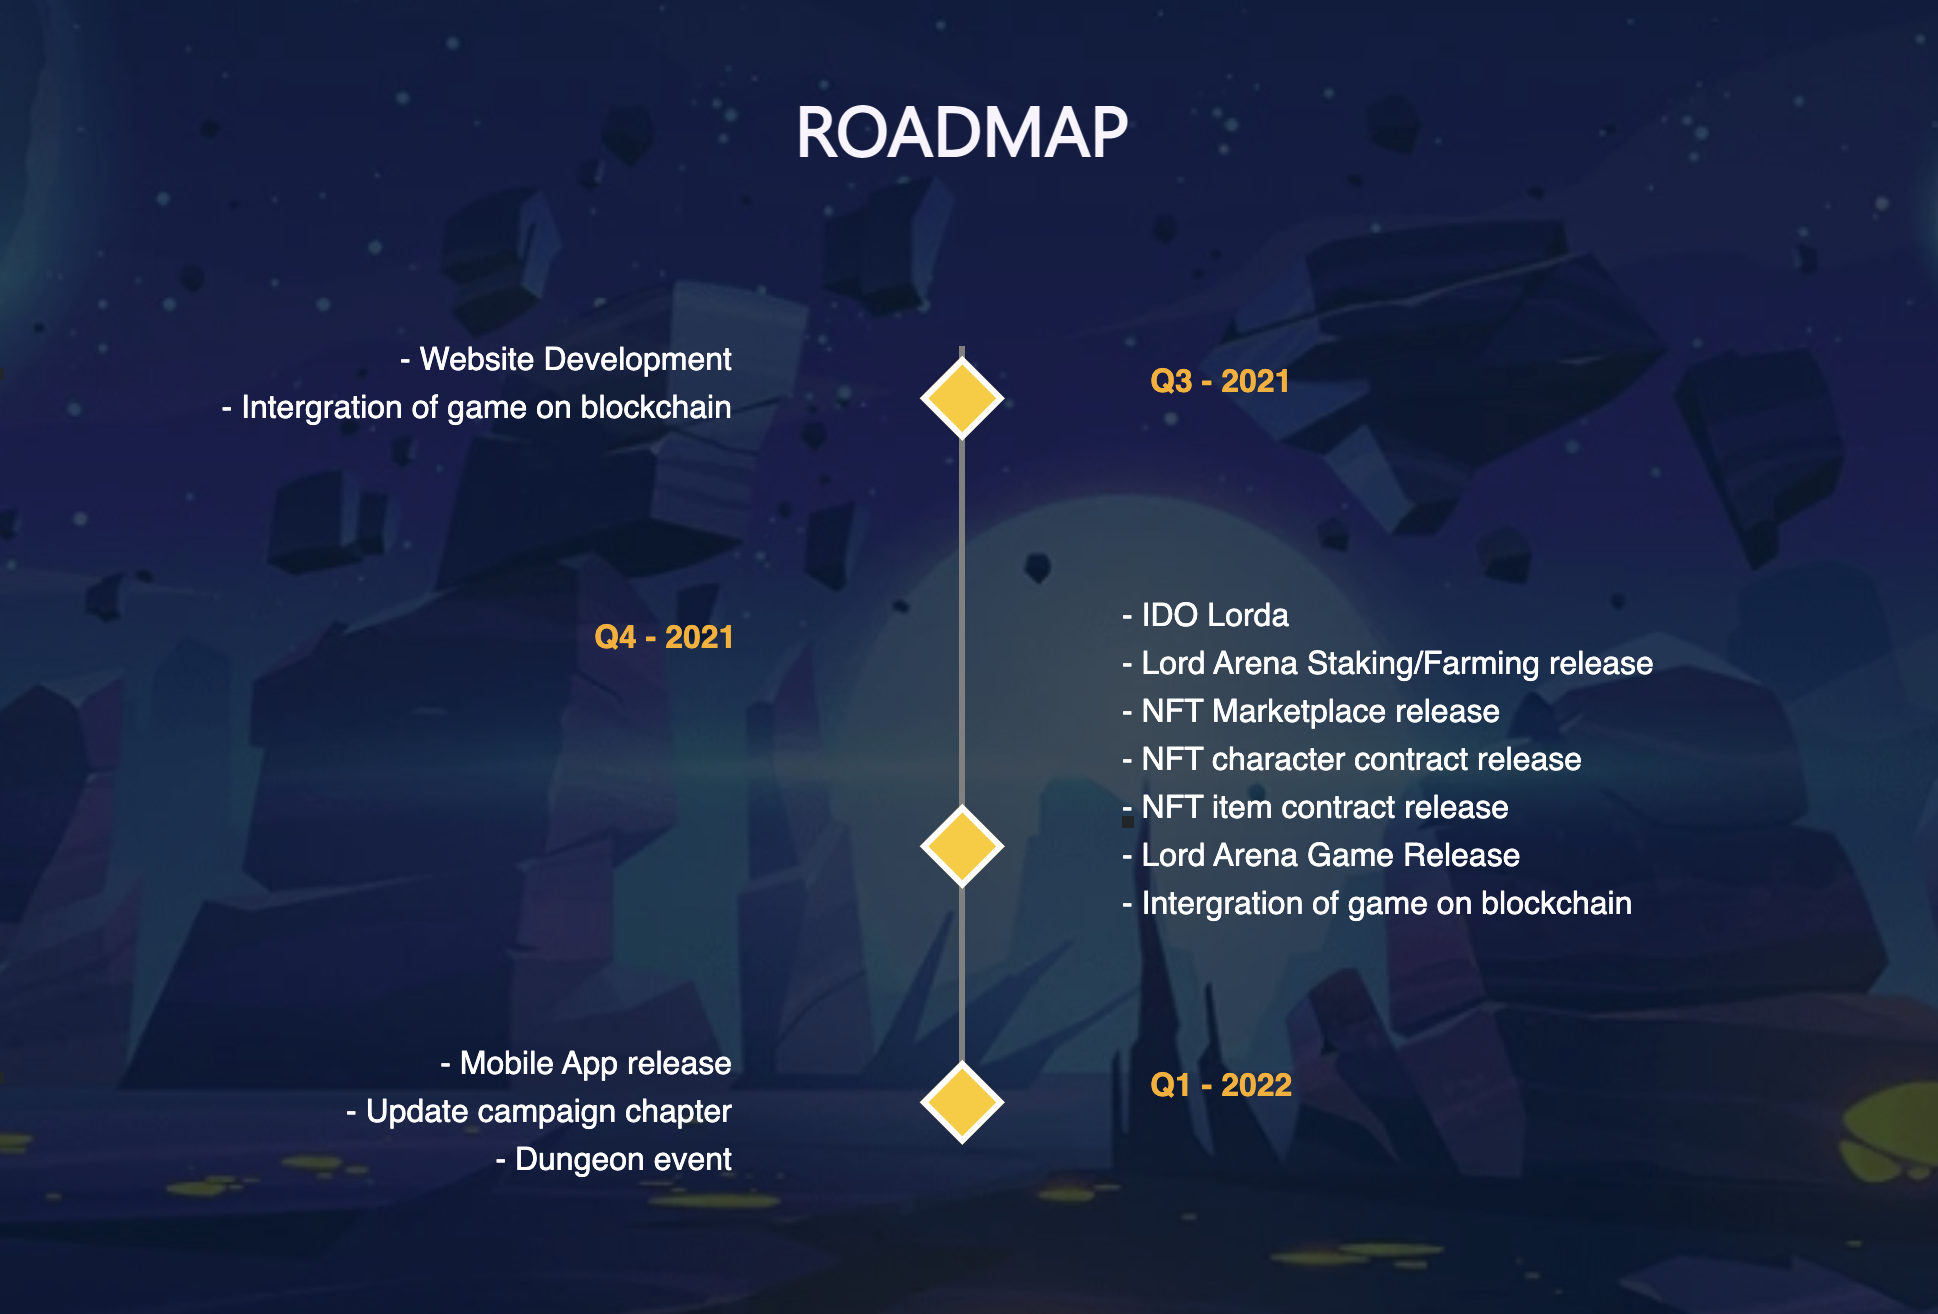 Lord Arena Roadmap